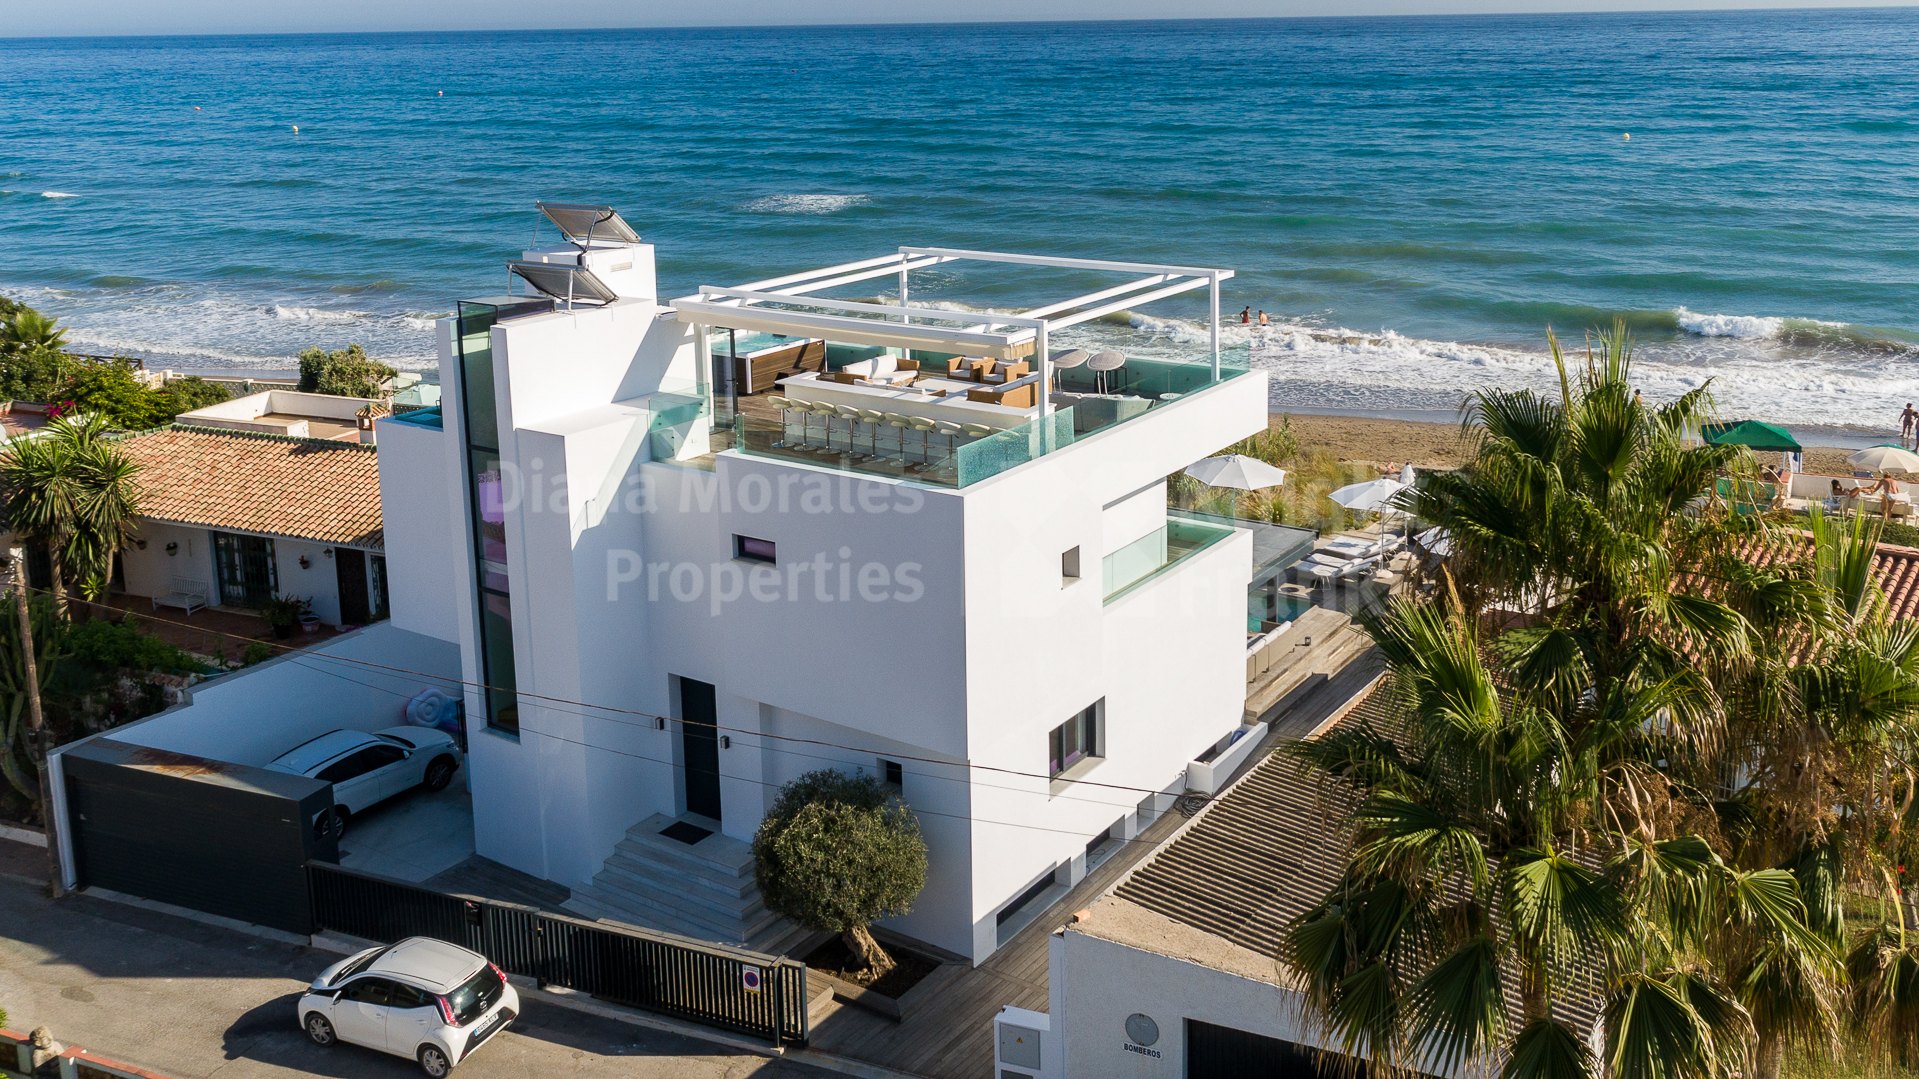 Costabella, Casa de estilo contemporáneo junto a la playa